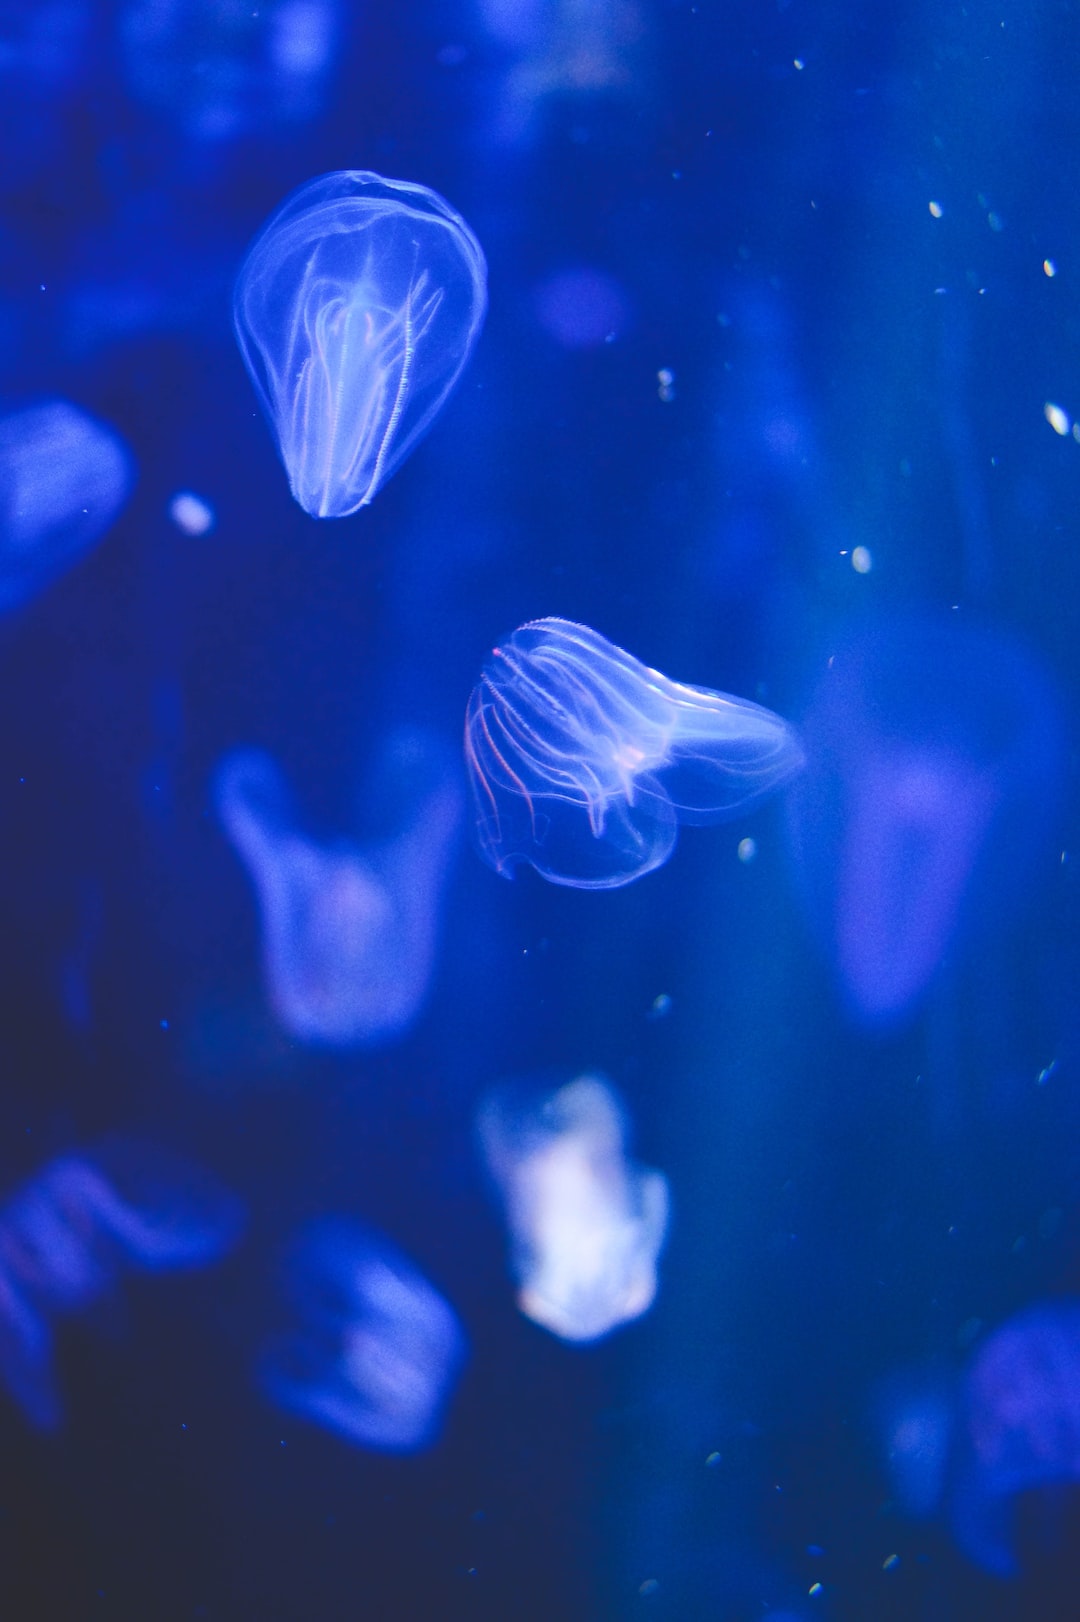 17 wichtige Fragen zu Wie Halte Ich Krebse Im Aquarium?